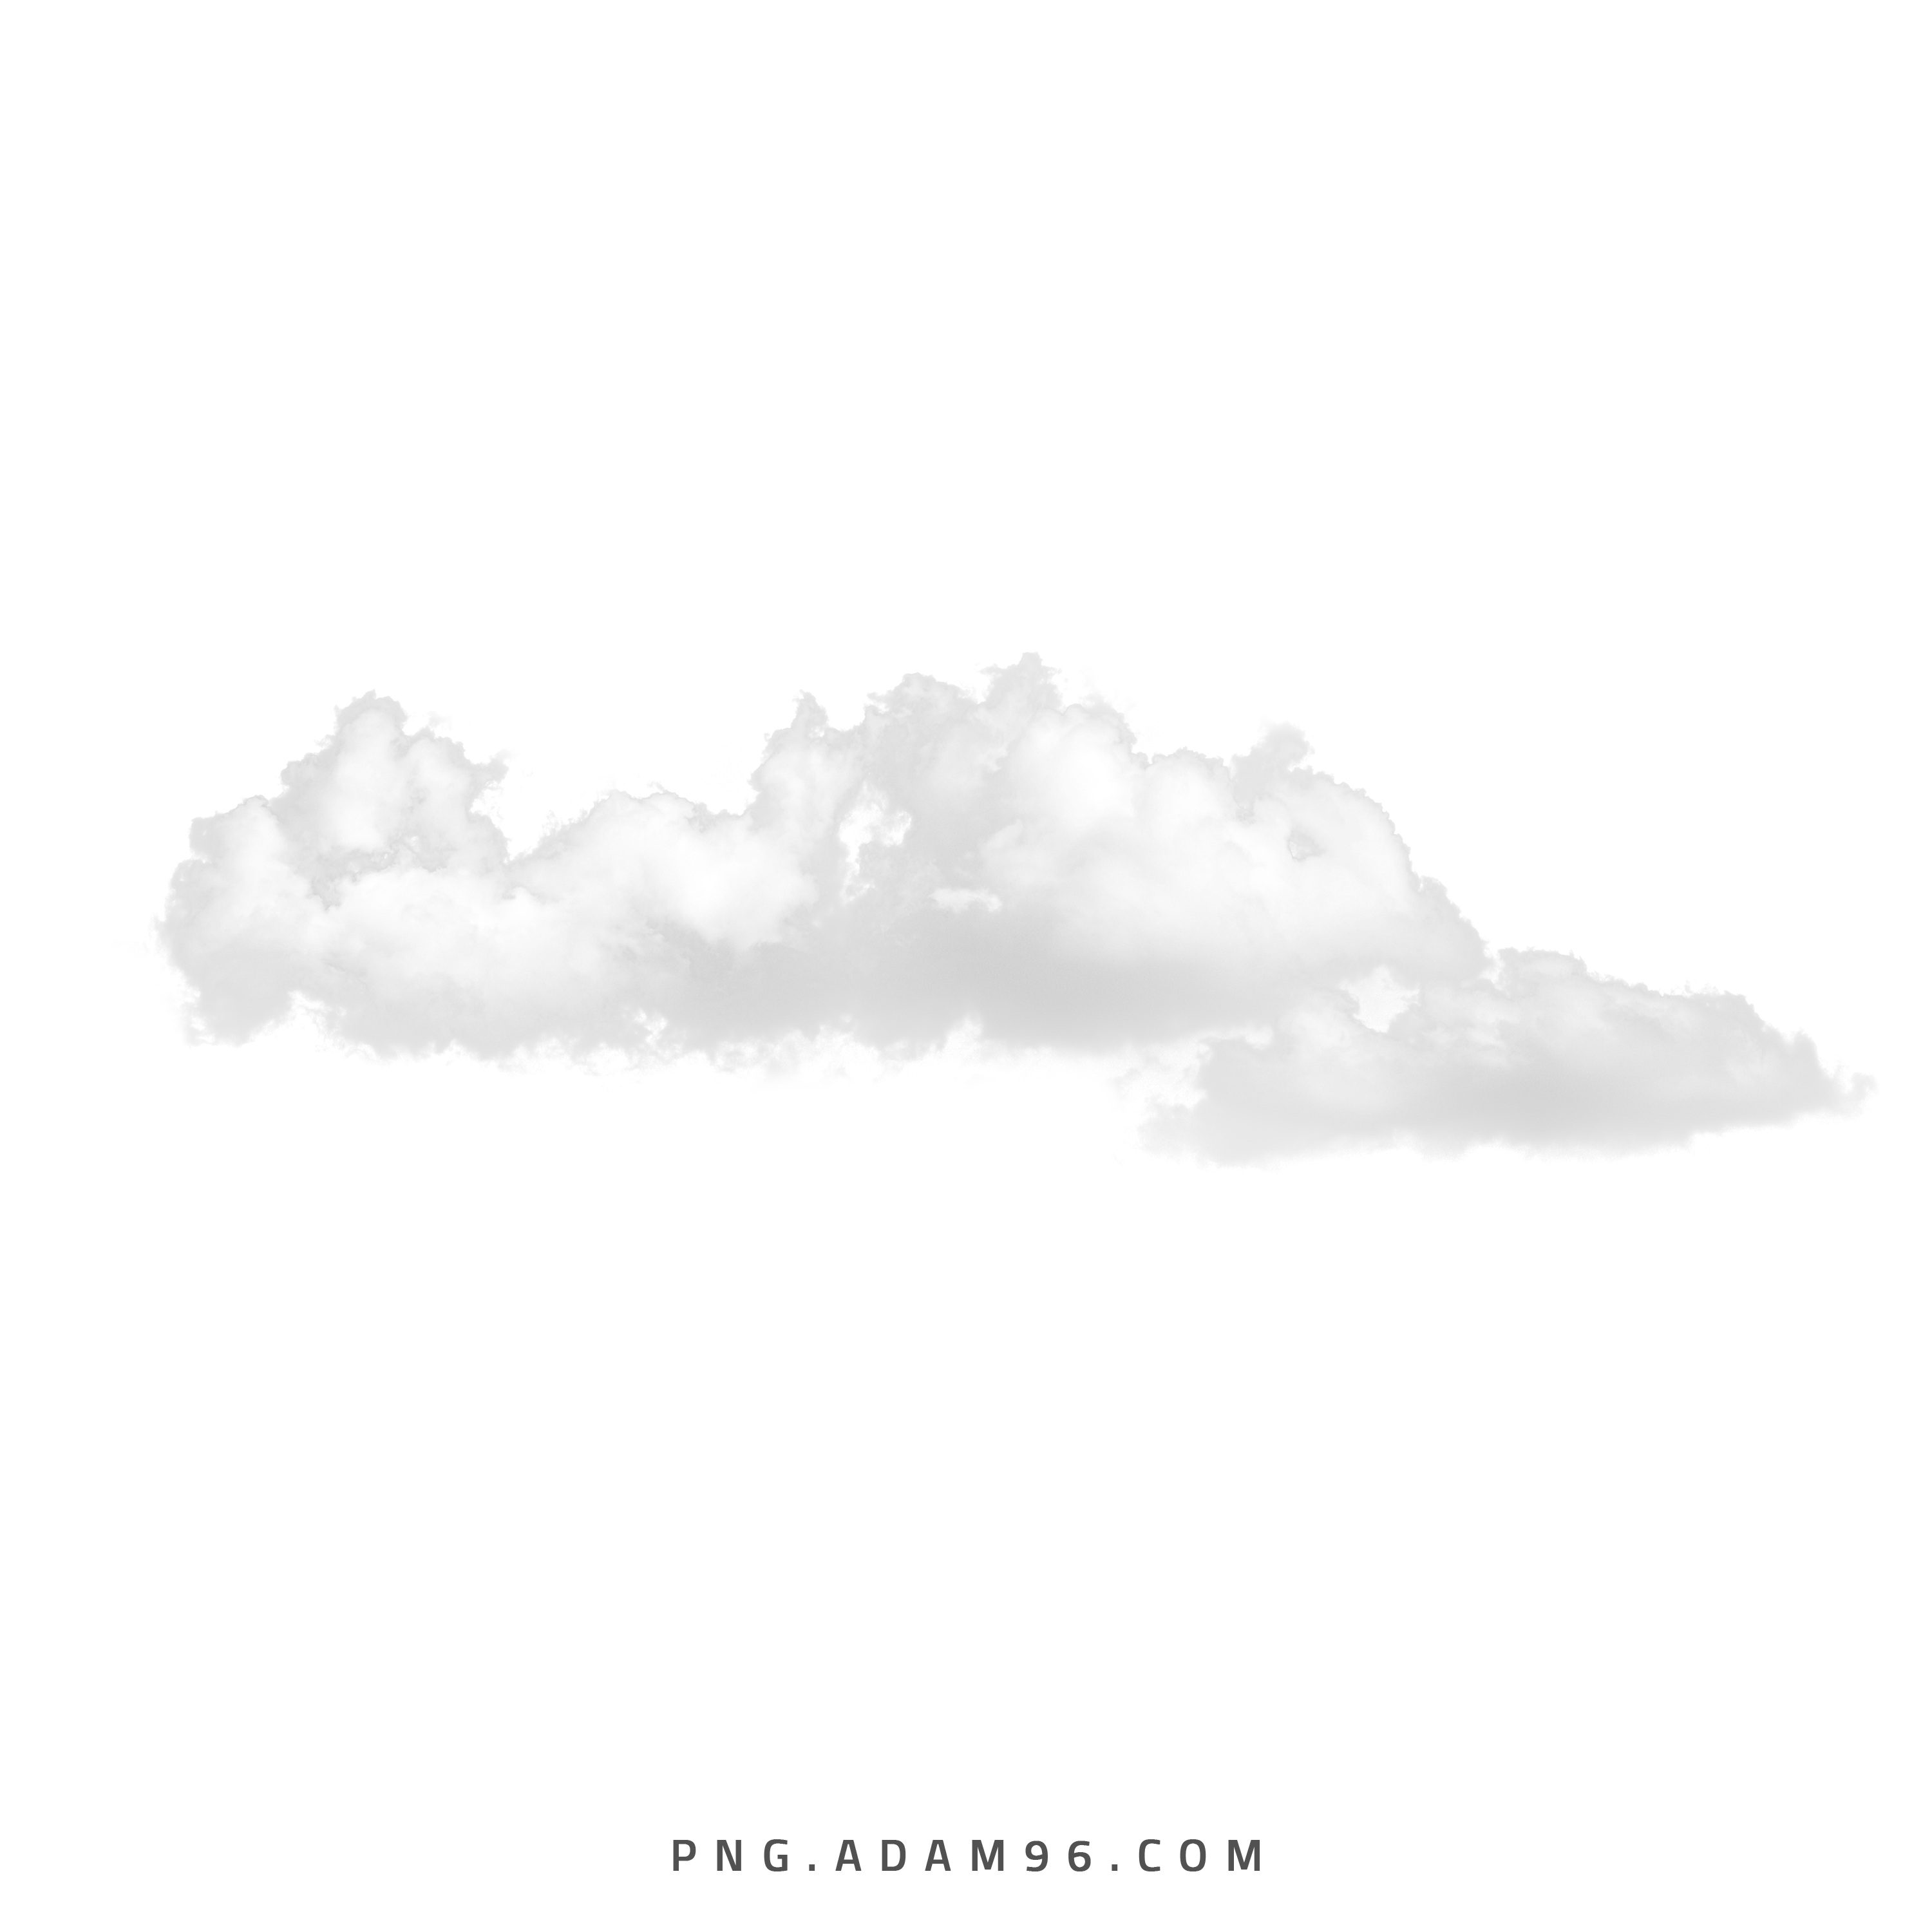 تحميل غيوم للتصميم بصيغة شفافة Clouds PNG